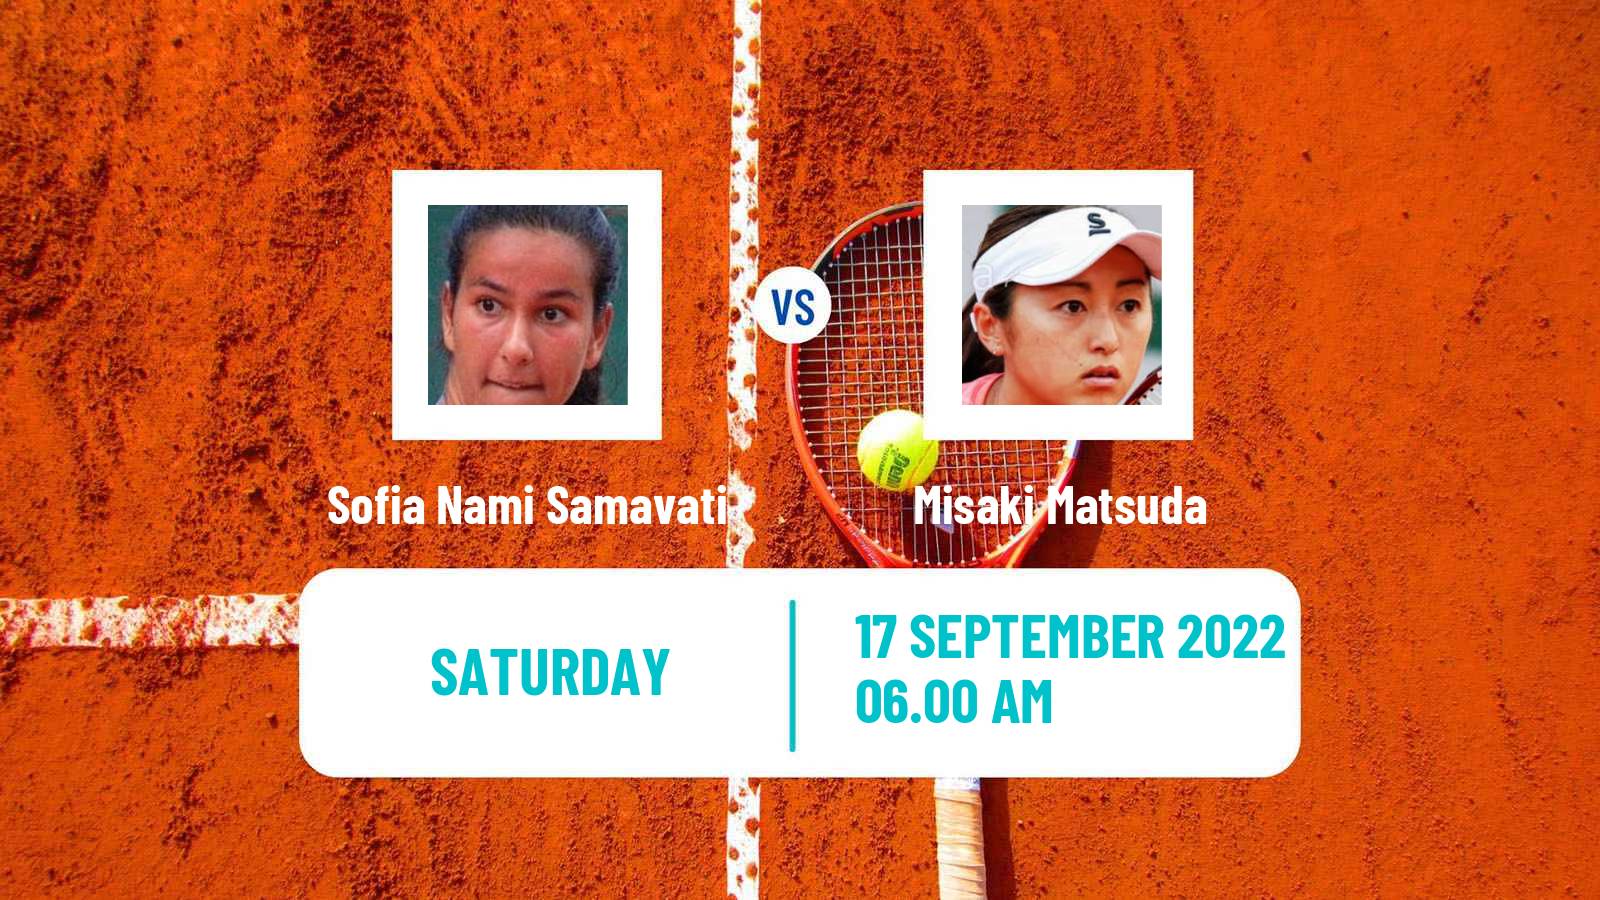 Tennis ITF Tournaments Sofia Nami Samavati - Misaki Matsuda